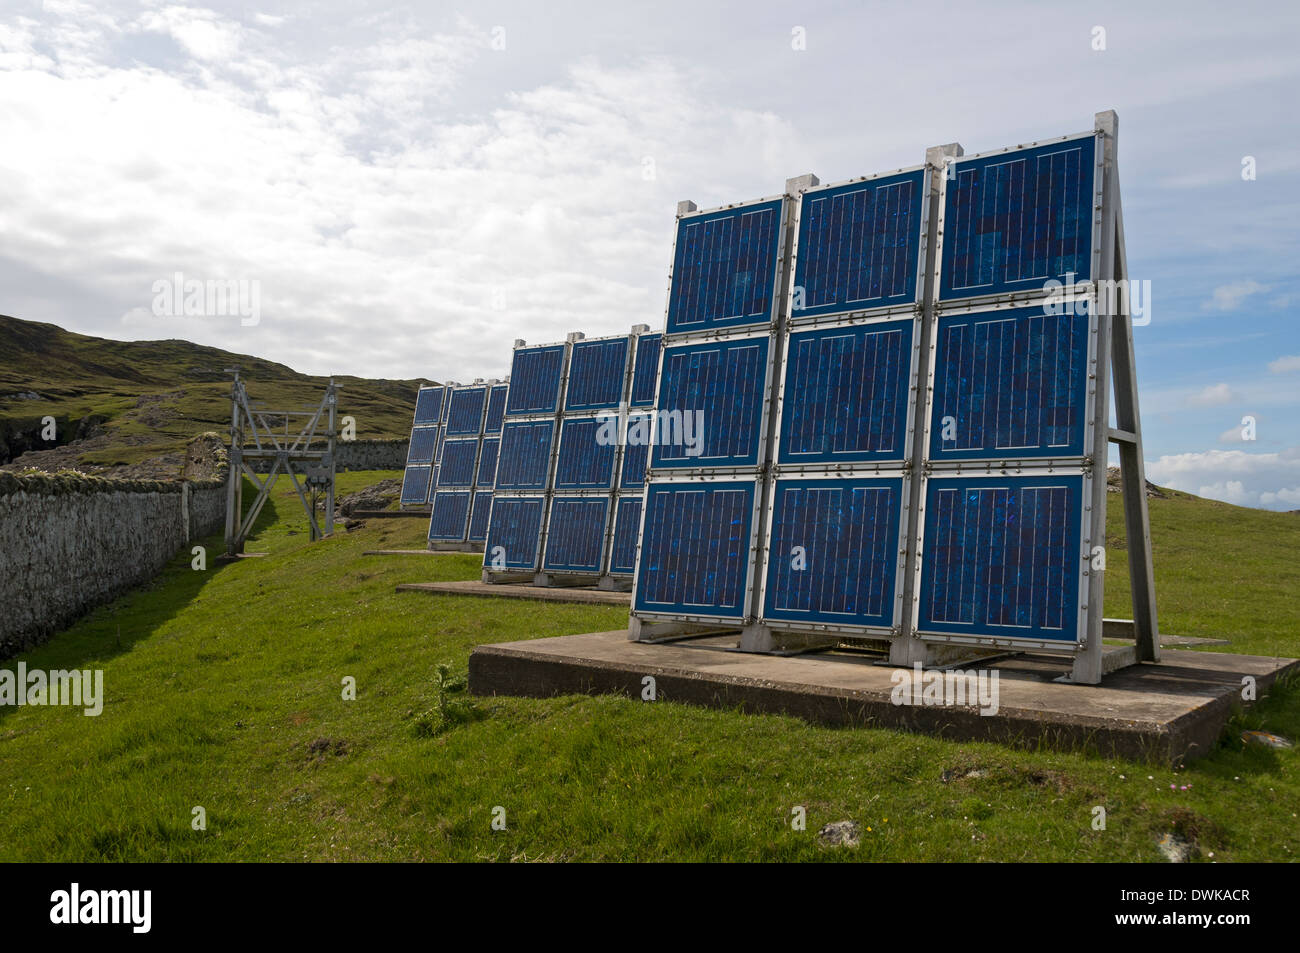 Tableau panneau solaire à Ushenish phare, South Uist, Western Isles, Ecosse, Royaume-Uni Banque D'Images